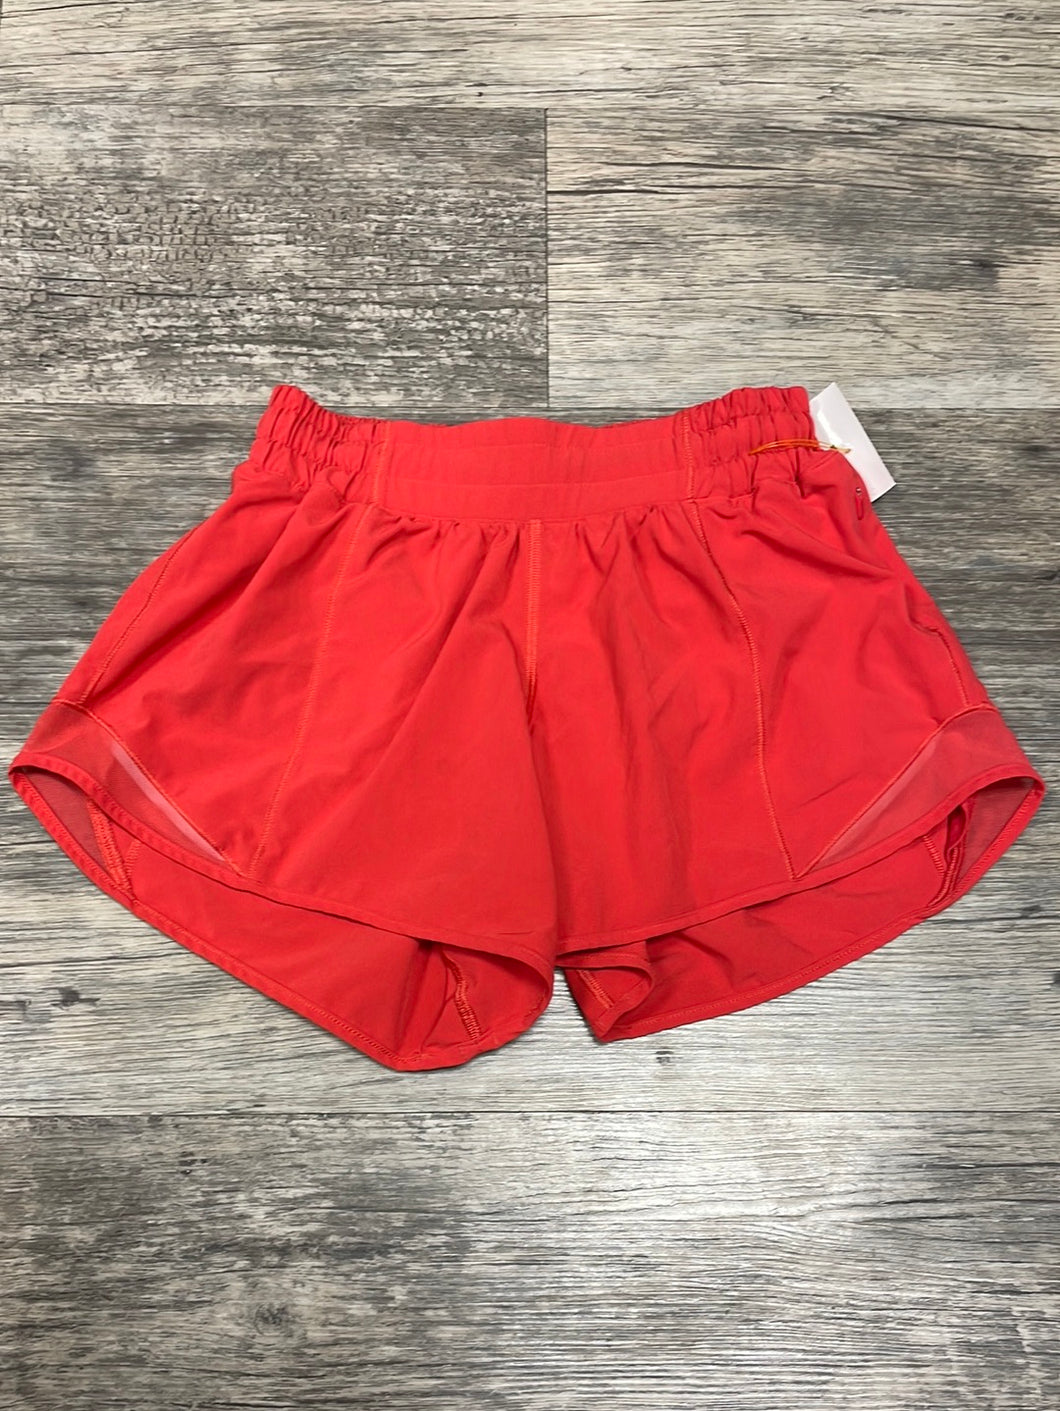 Lululemon Women's Athletic Shorts Size 4